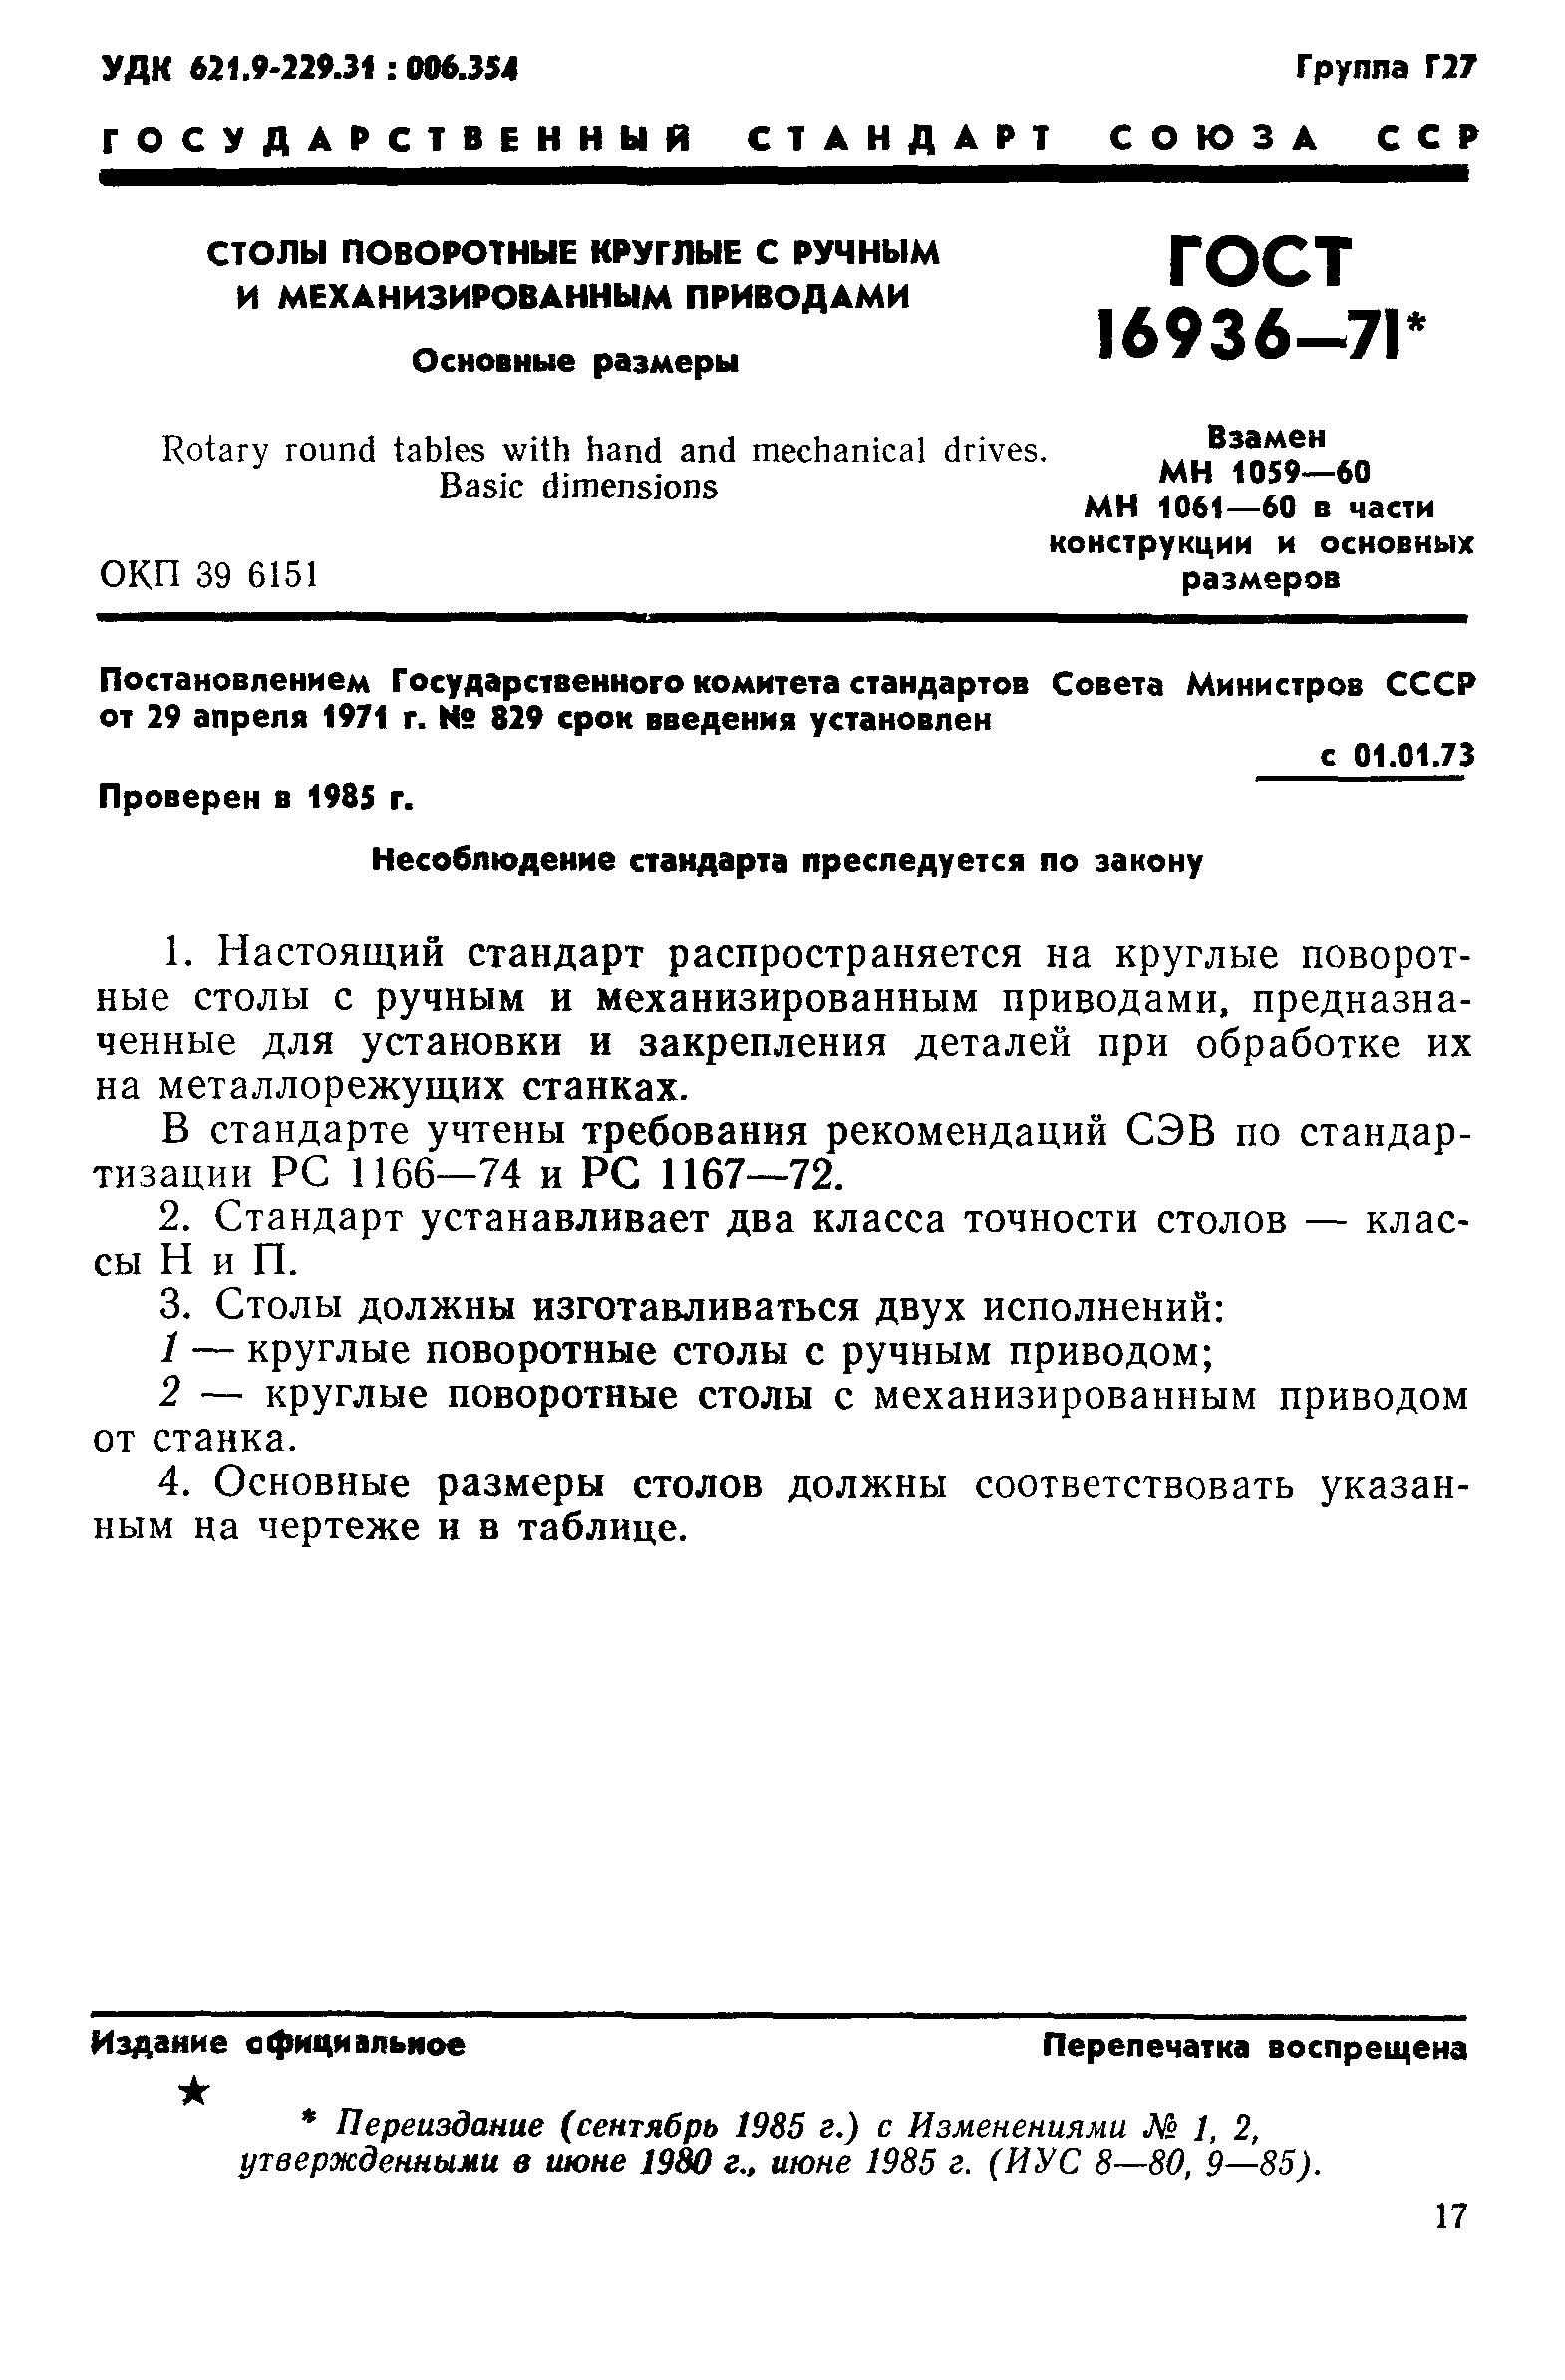 Стол поворотный круглый ГОСТ 16936-71